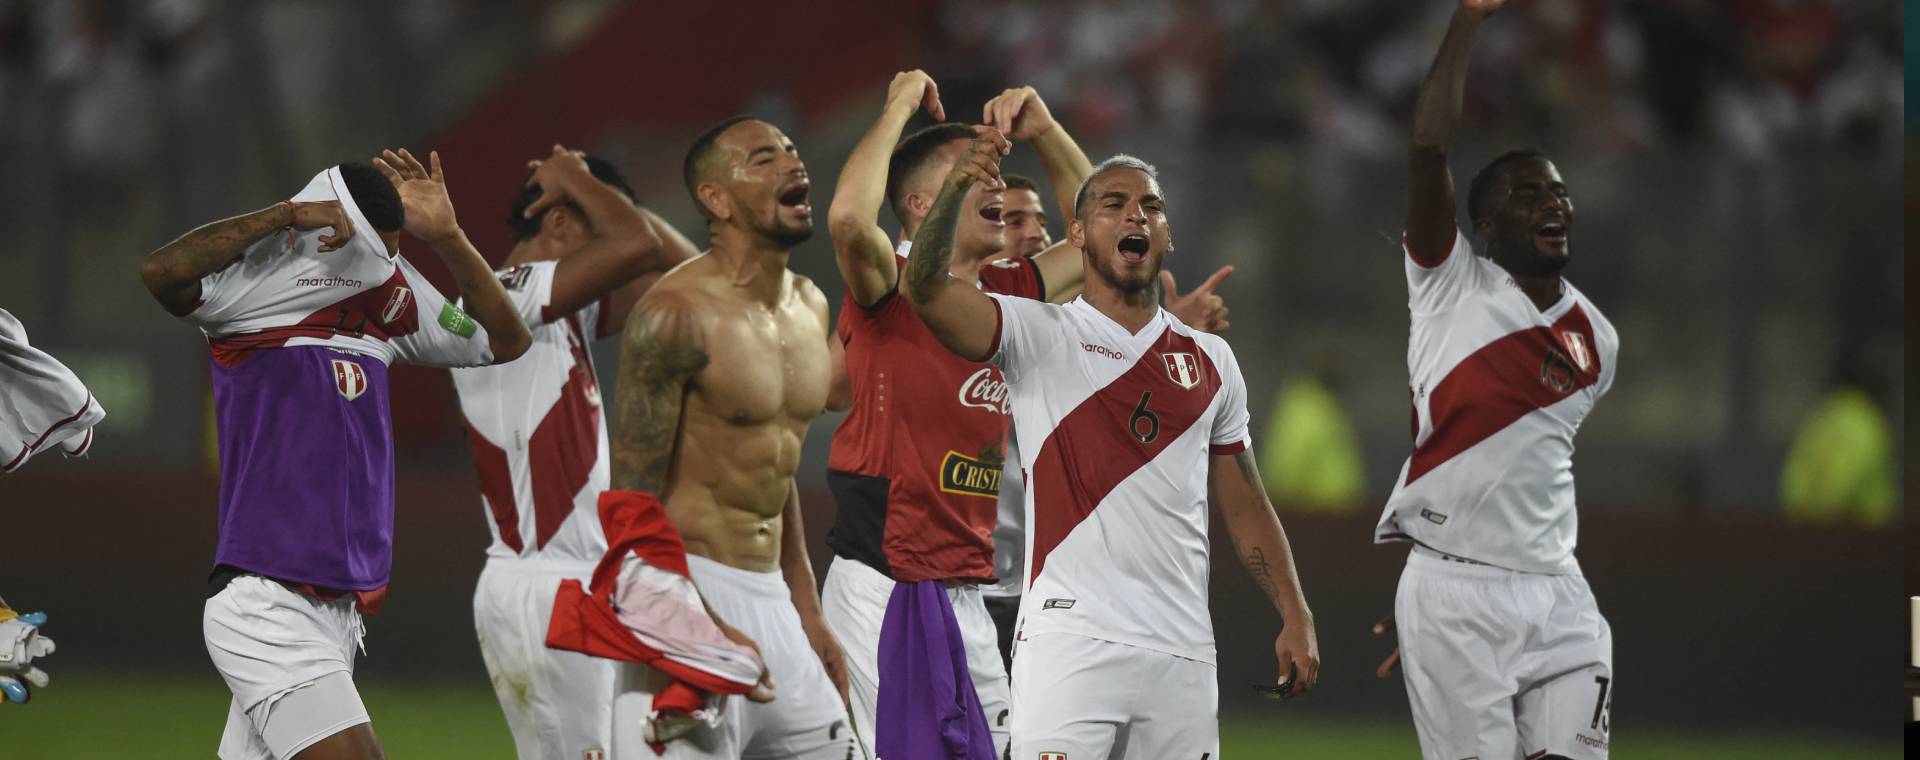 Os possíveis rivais peruanos se vencerem a repescagem e tudo sobre o  sorteio da Copa do Mundo de 2022 do Catar - Infobae